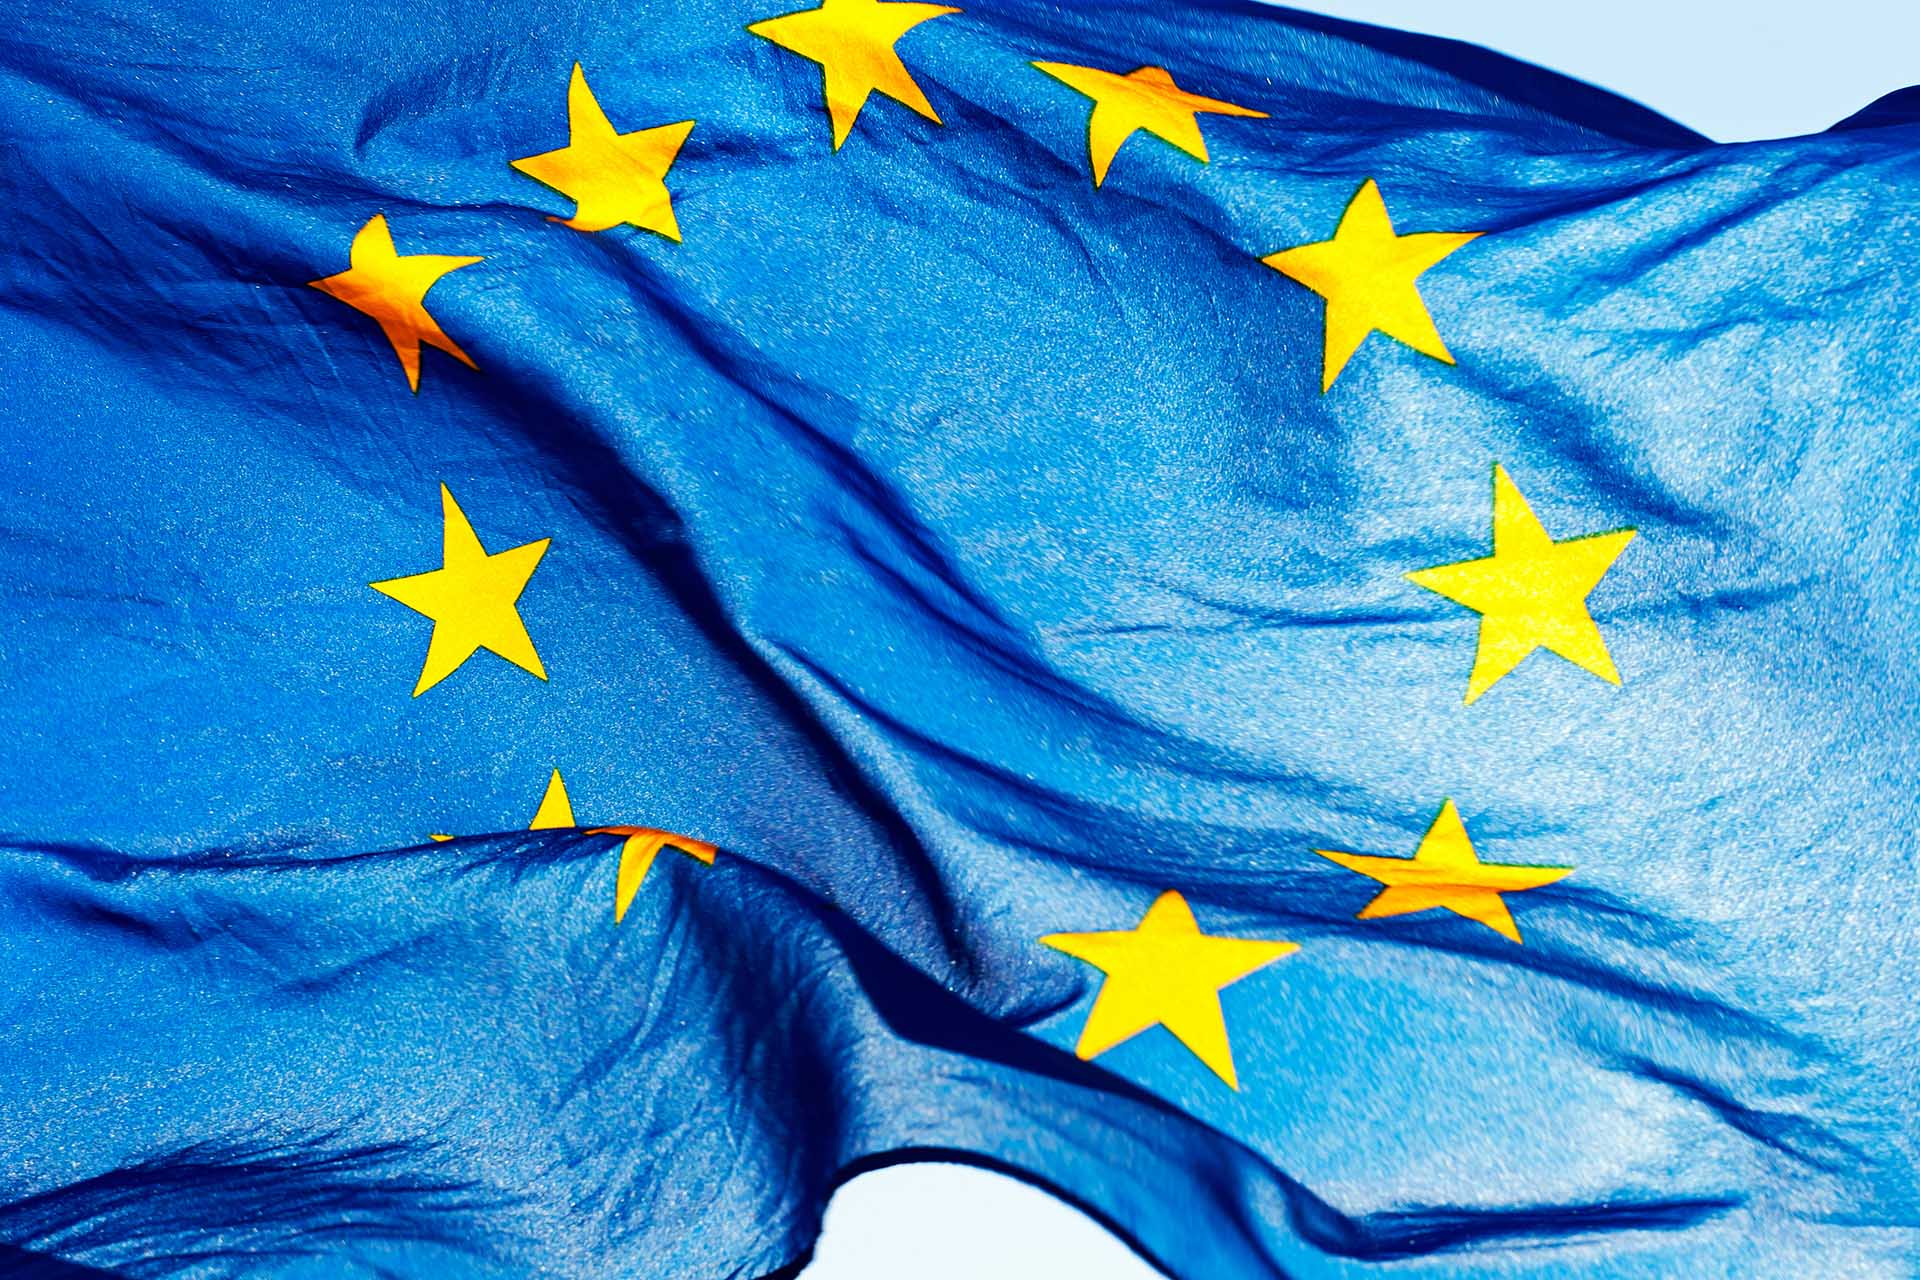 Sankcje Unii Europejskiej oraz wybranych krajów spoza UE przeciwko Rosji oraz Białorusi [informacja dla przedsiębiorców]